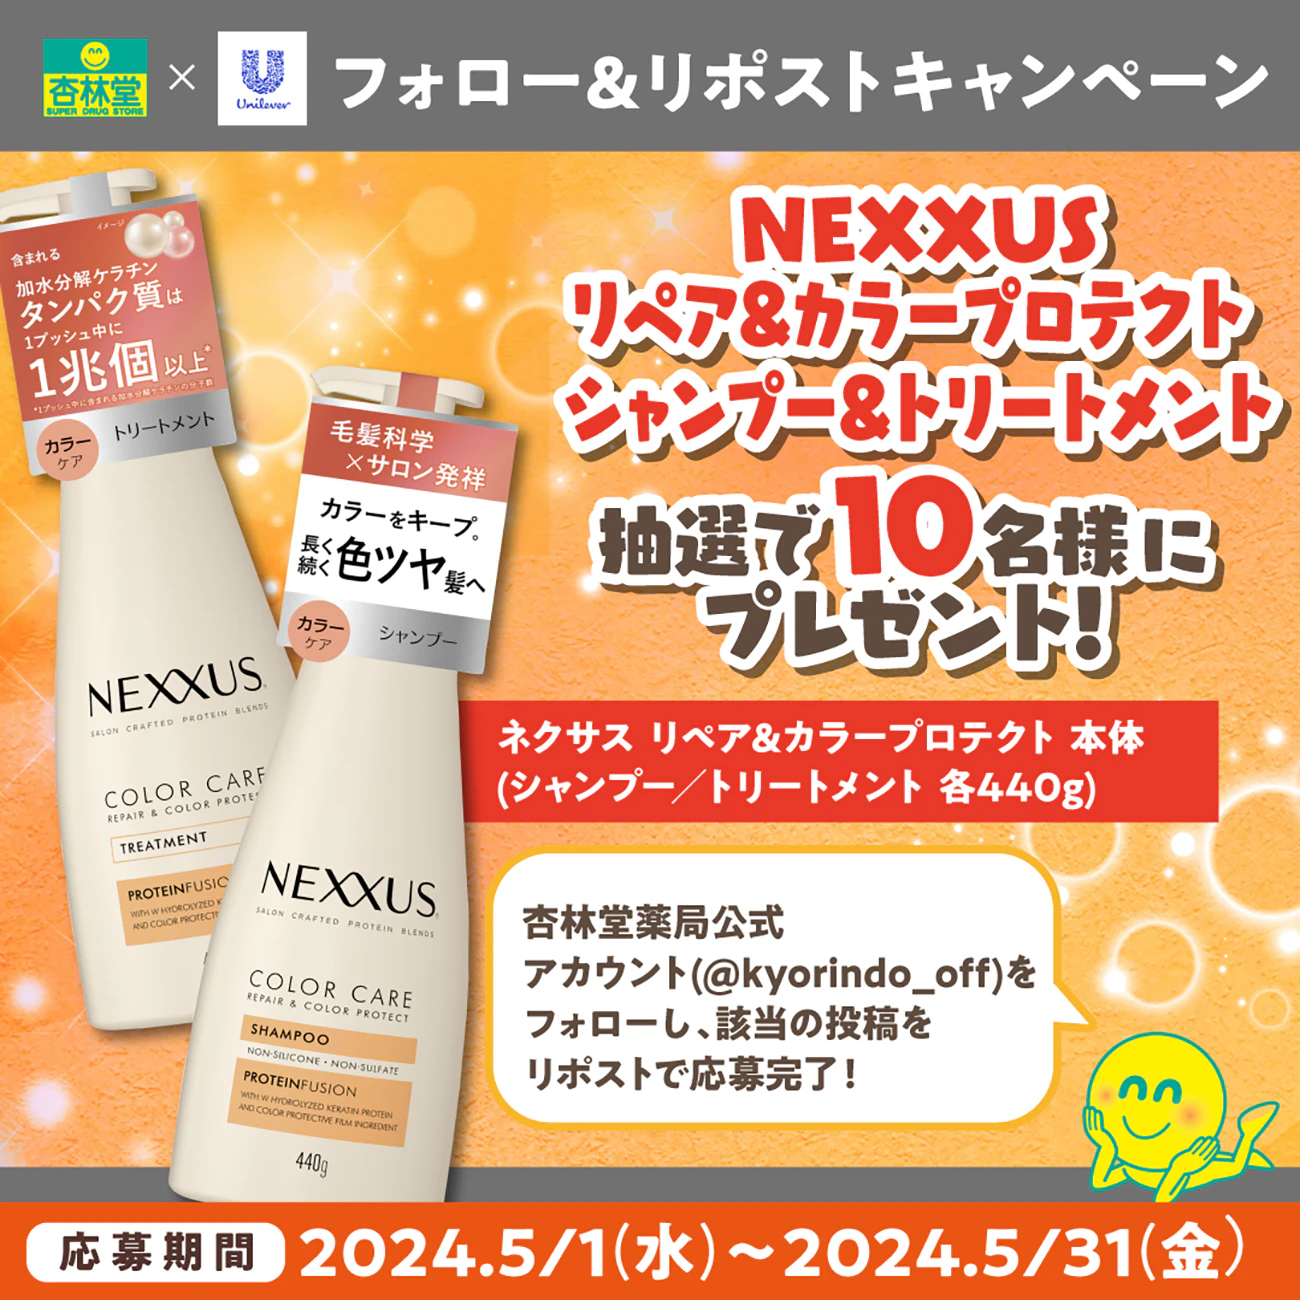 【X限定企画】NEXXUS(ネクサス) リペアアンドカラープロテクト シャンプー&トリートメント Xフォロー＆リポスト プレゼントキャンペーンのサムネイル